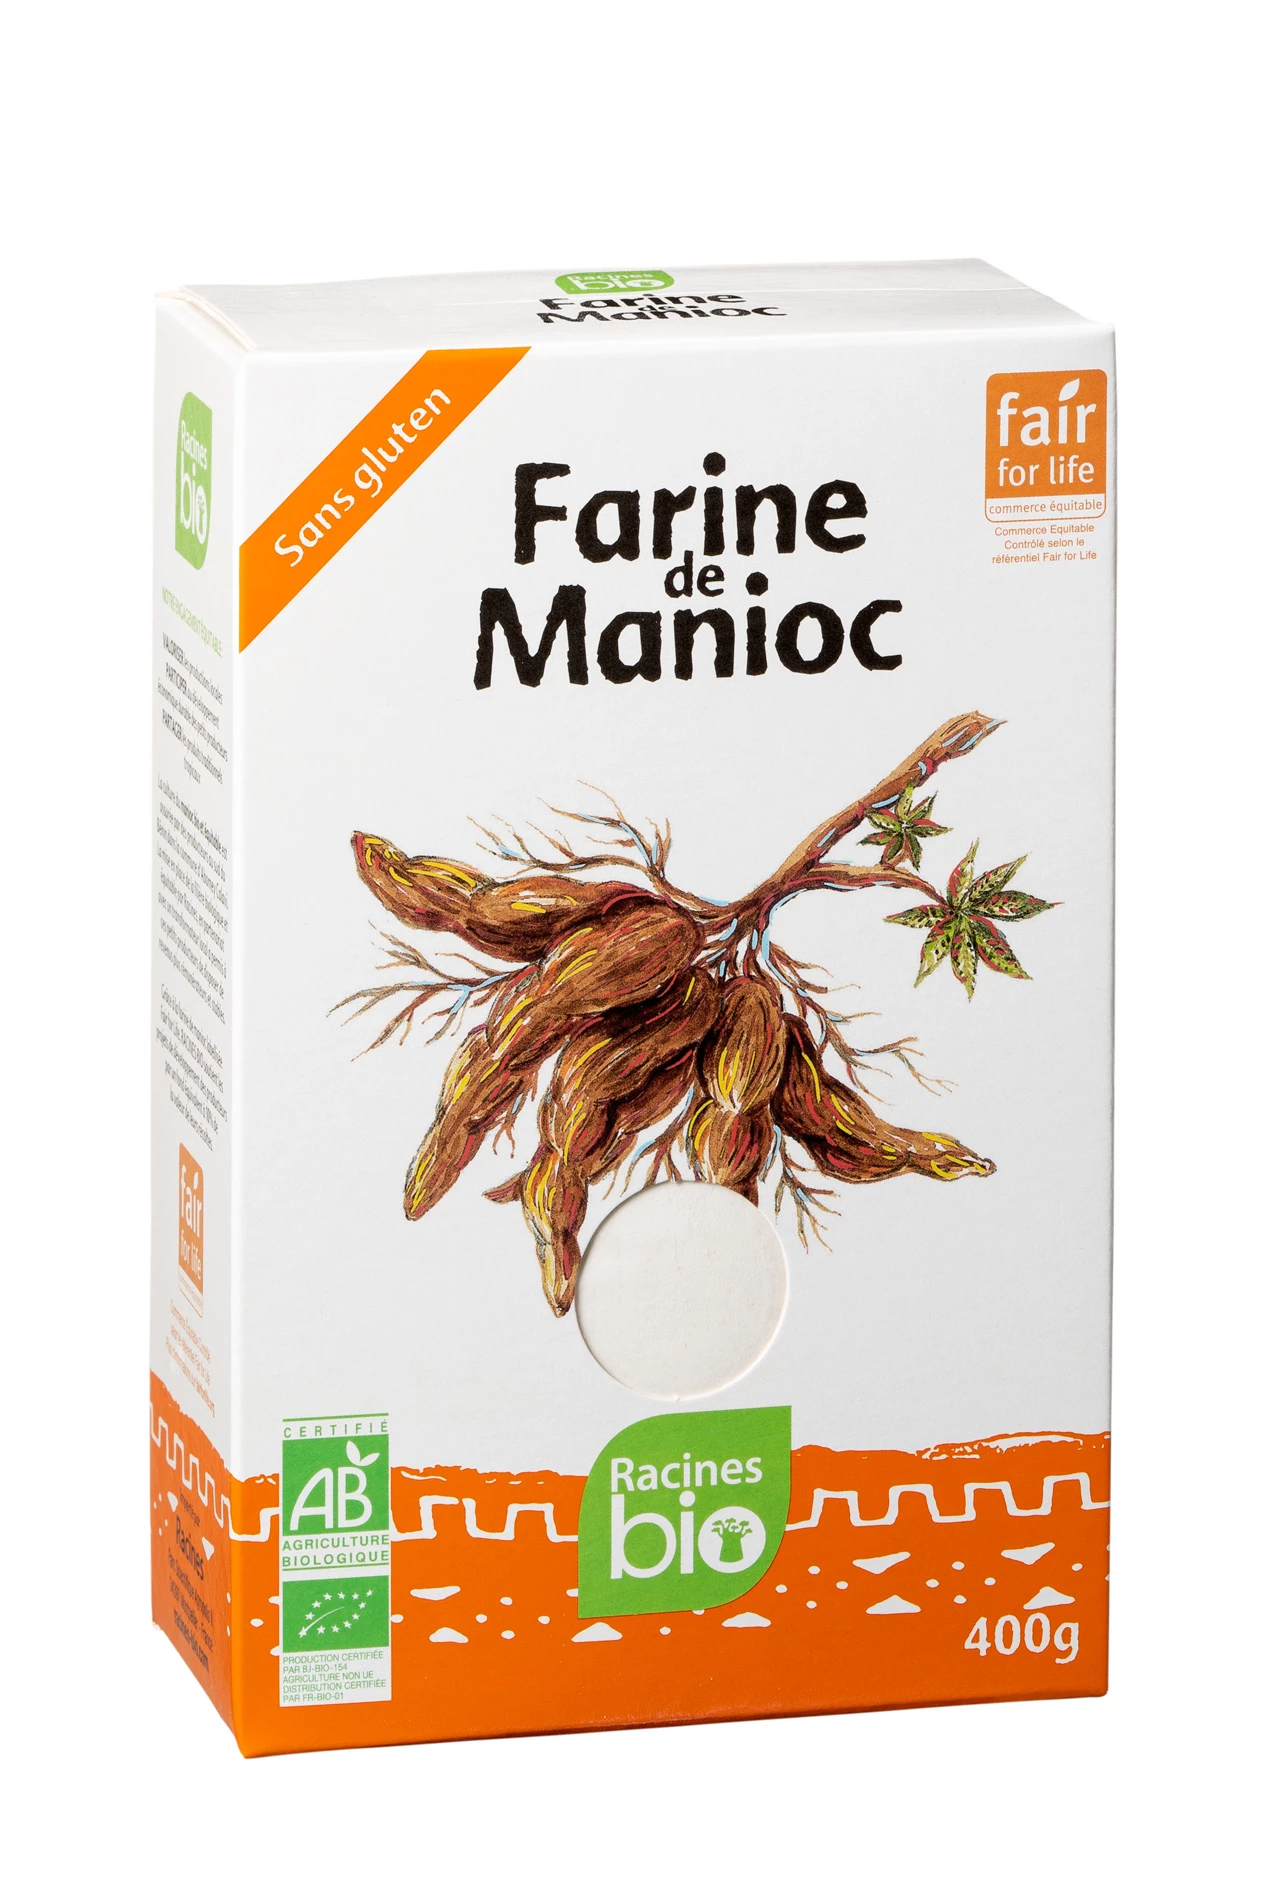 Farinha de Mandioca (20 X 400 G) - Racines Bio